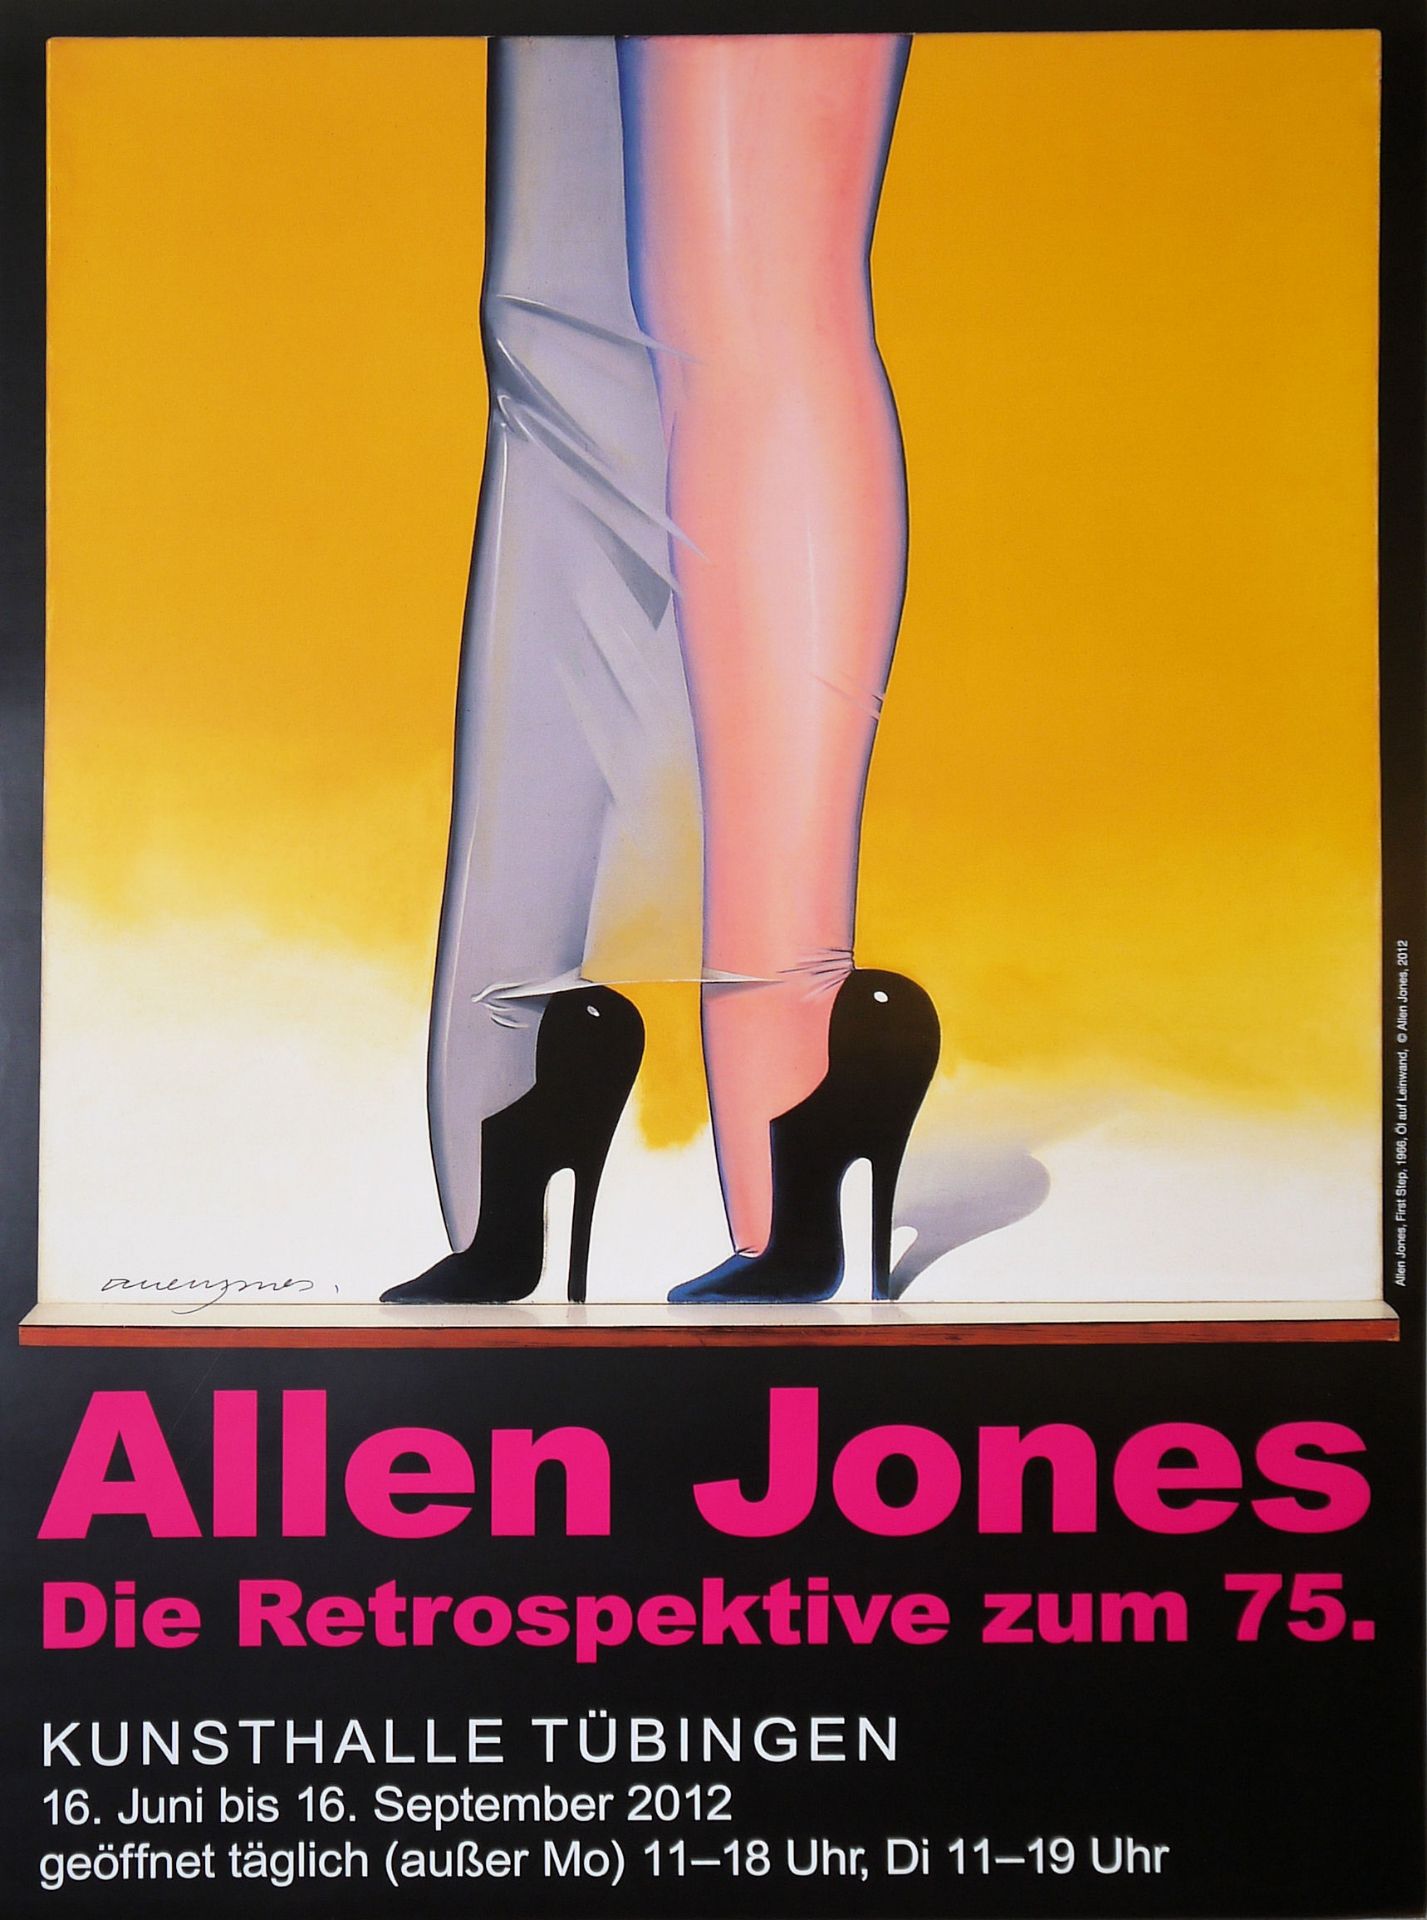 Allen Jones, Pop Art, bundle of 5 signed exhibition posters - Image 4 of 5